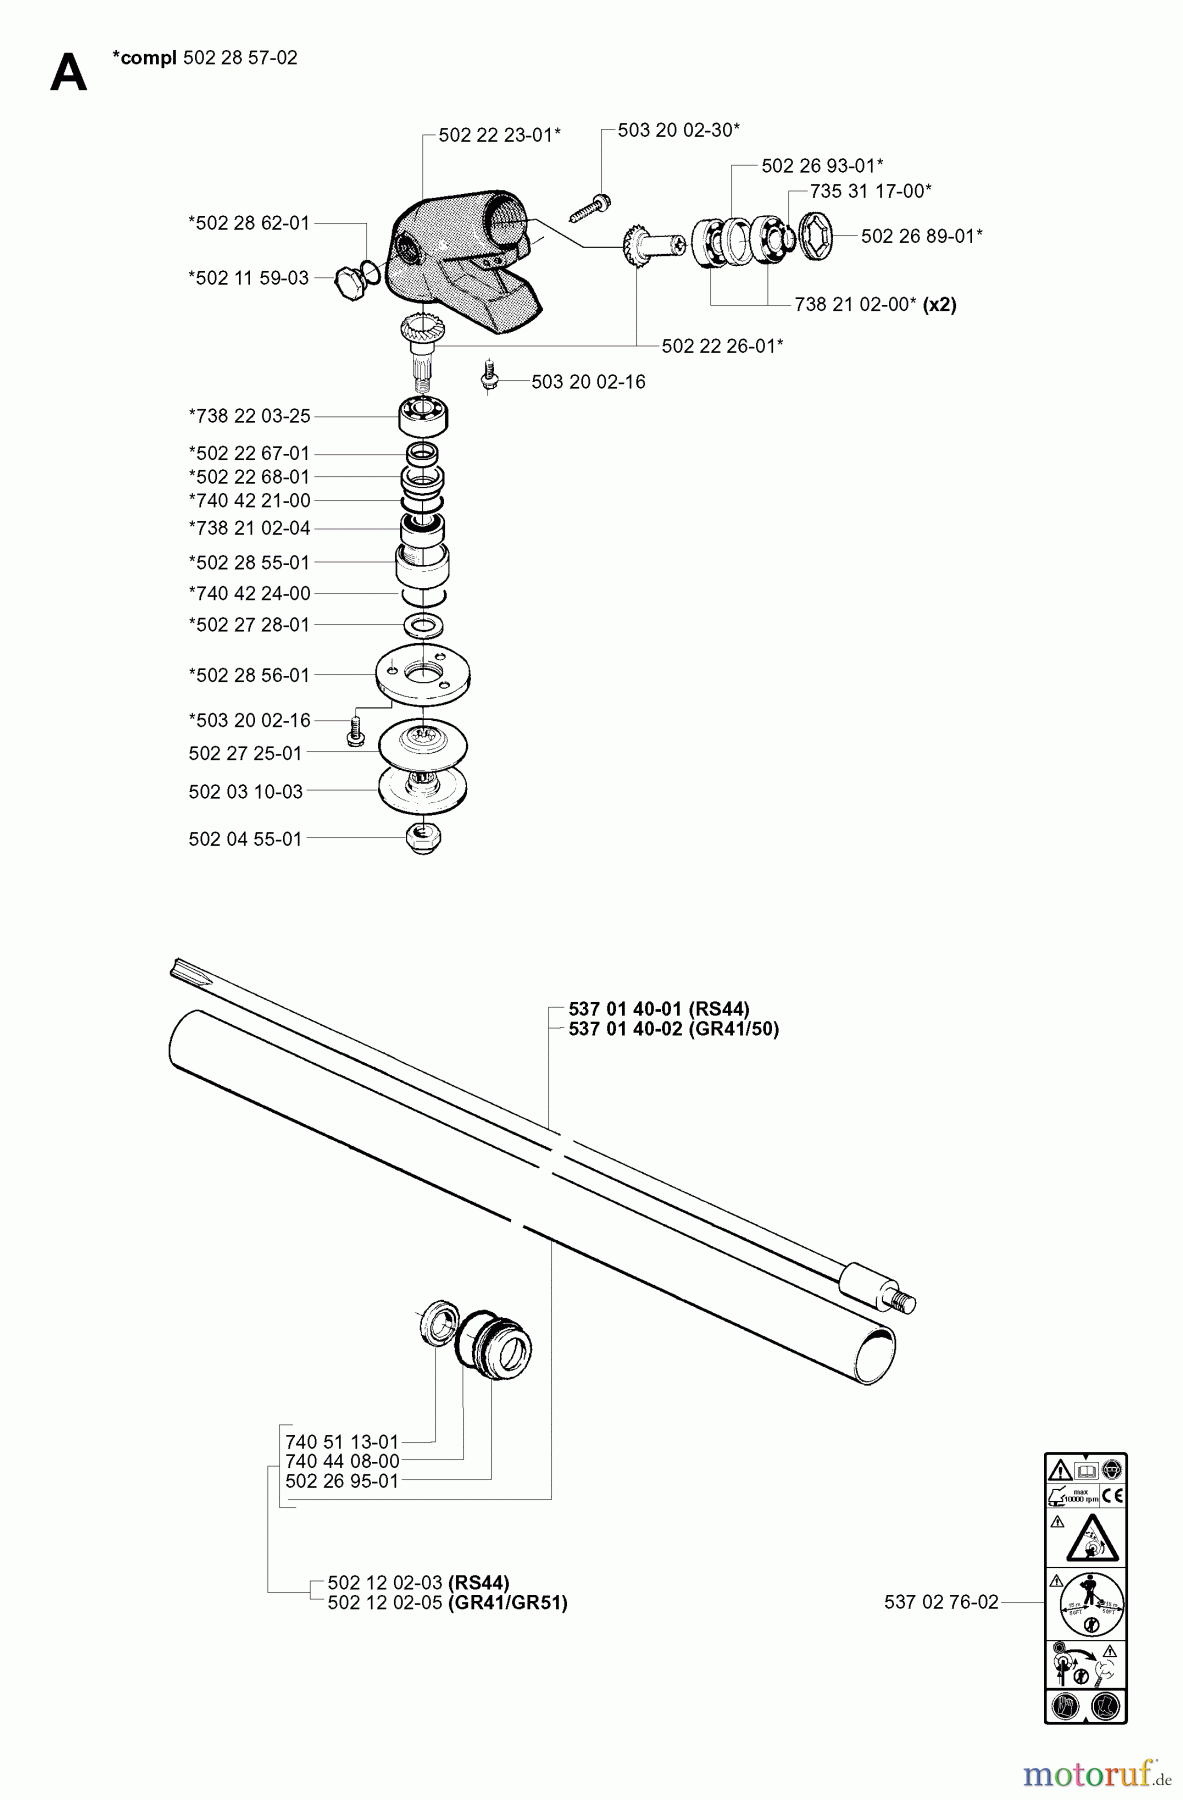  Jonsered Motorsensen, Trimmer GR41 - Jonsered String/Brush Trimmer (2001-03) BEVEL GEAR SHAFT